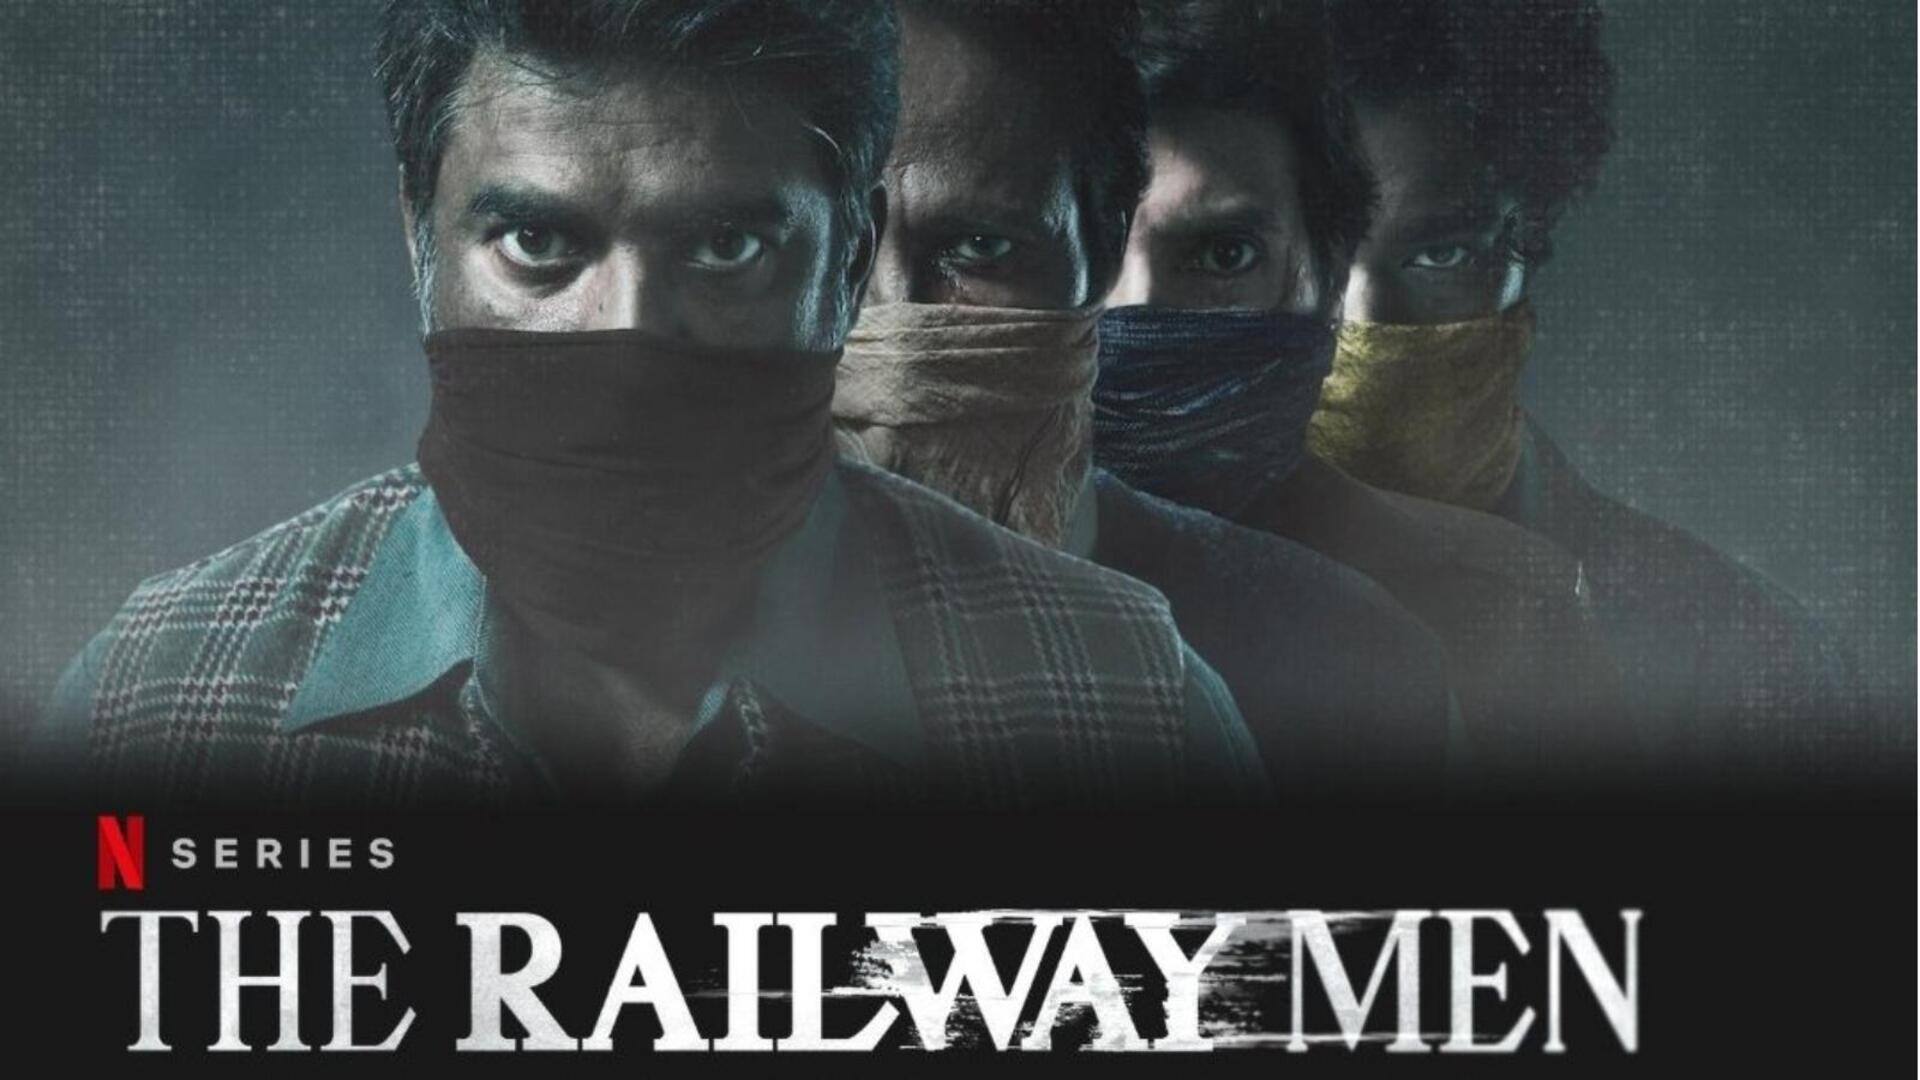 आर माधवन की 'द रेलवे मेन' का प्रोमो वीडियो जारी, जानिए कब और कहां होगी रिलीज 